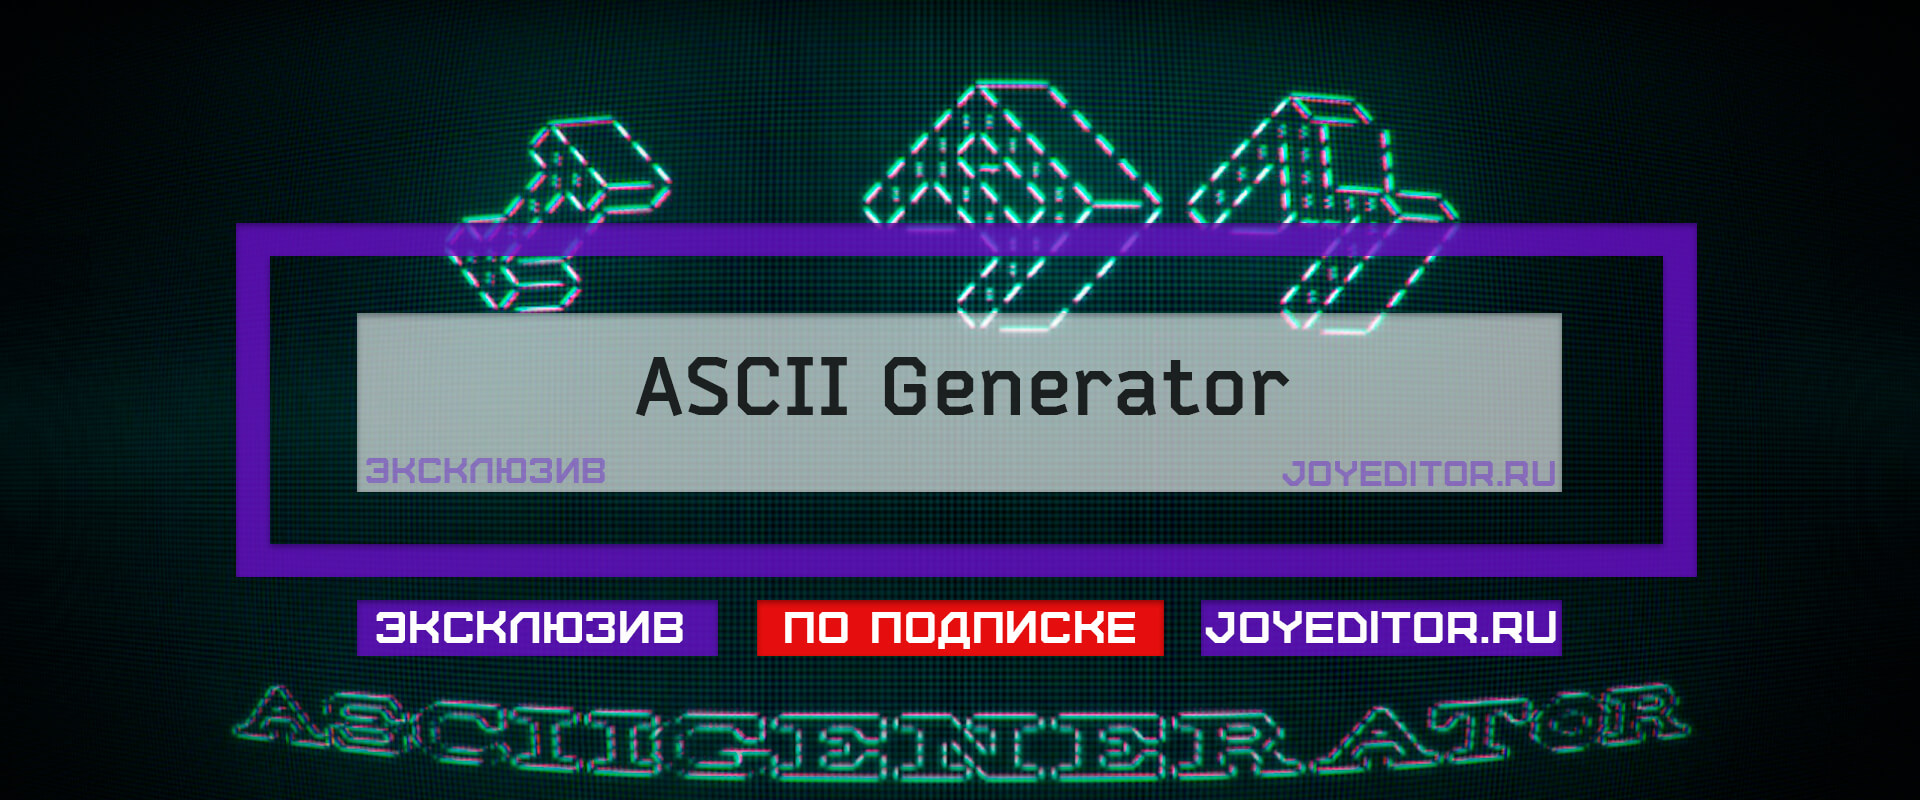 Ascii generator for steam фото 26